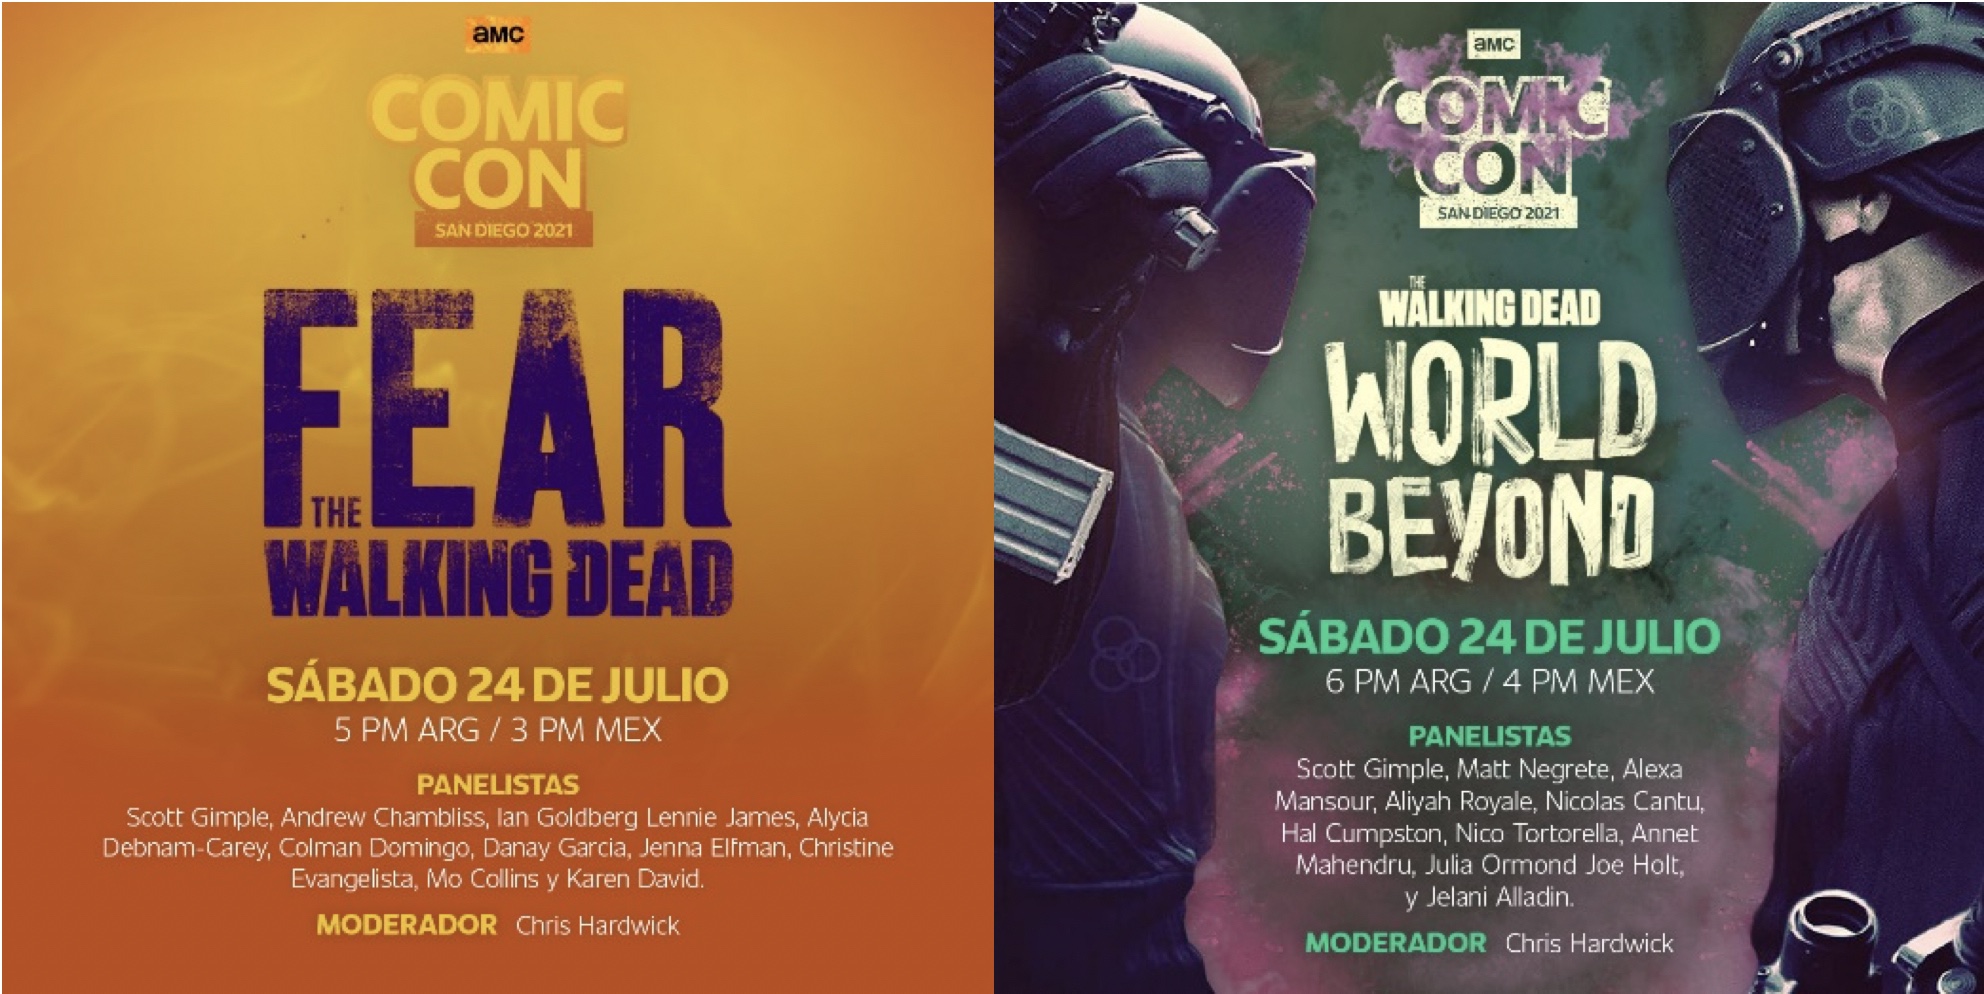 Público colombiano podrá acceder a los paneles de AMC en la Comic Con 2021